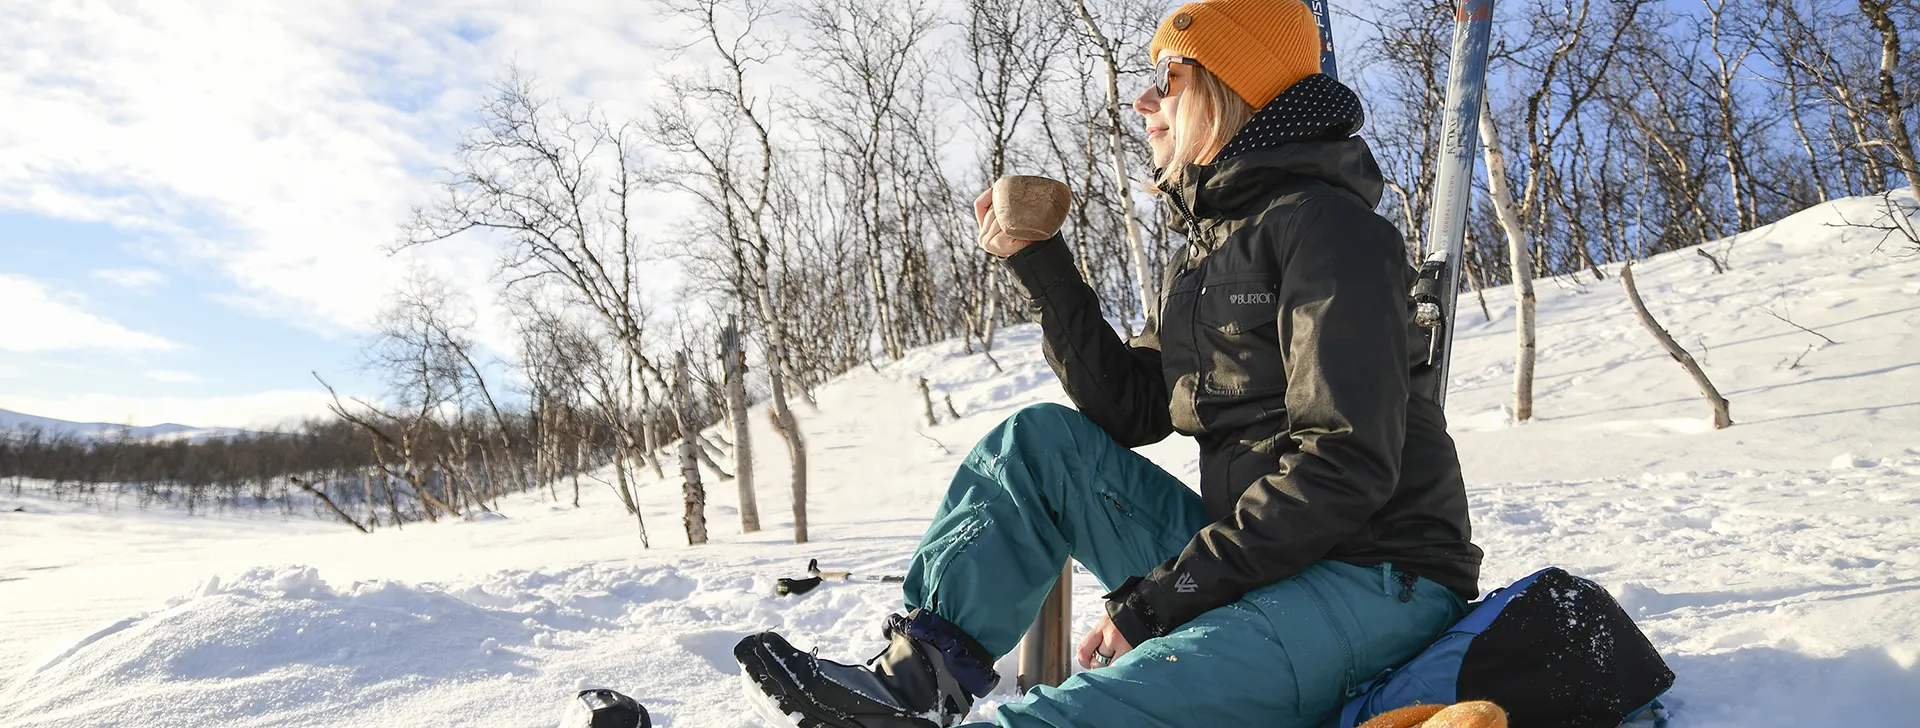 Hiihtoretkellä taukoa pitävä nainen istuu lumisessa rinteessä kuksa kädessä.